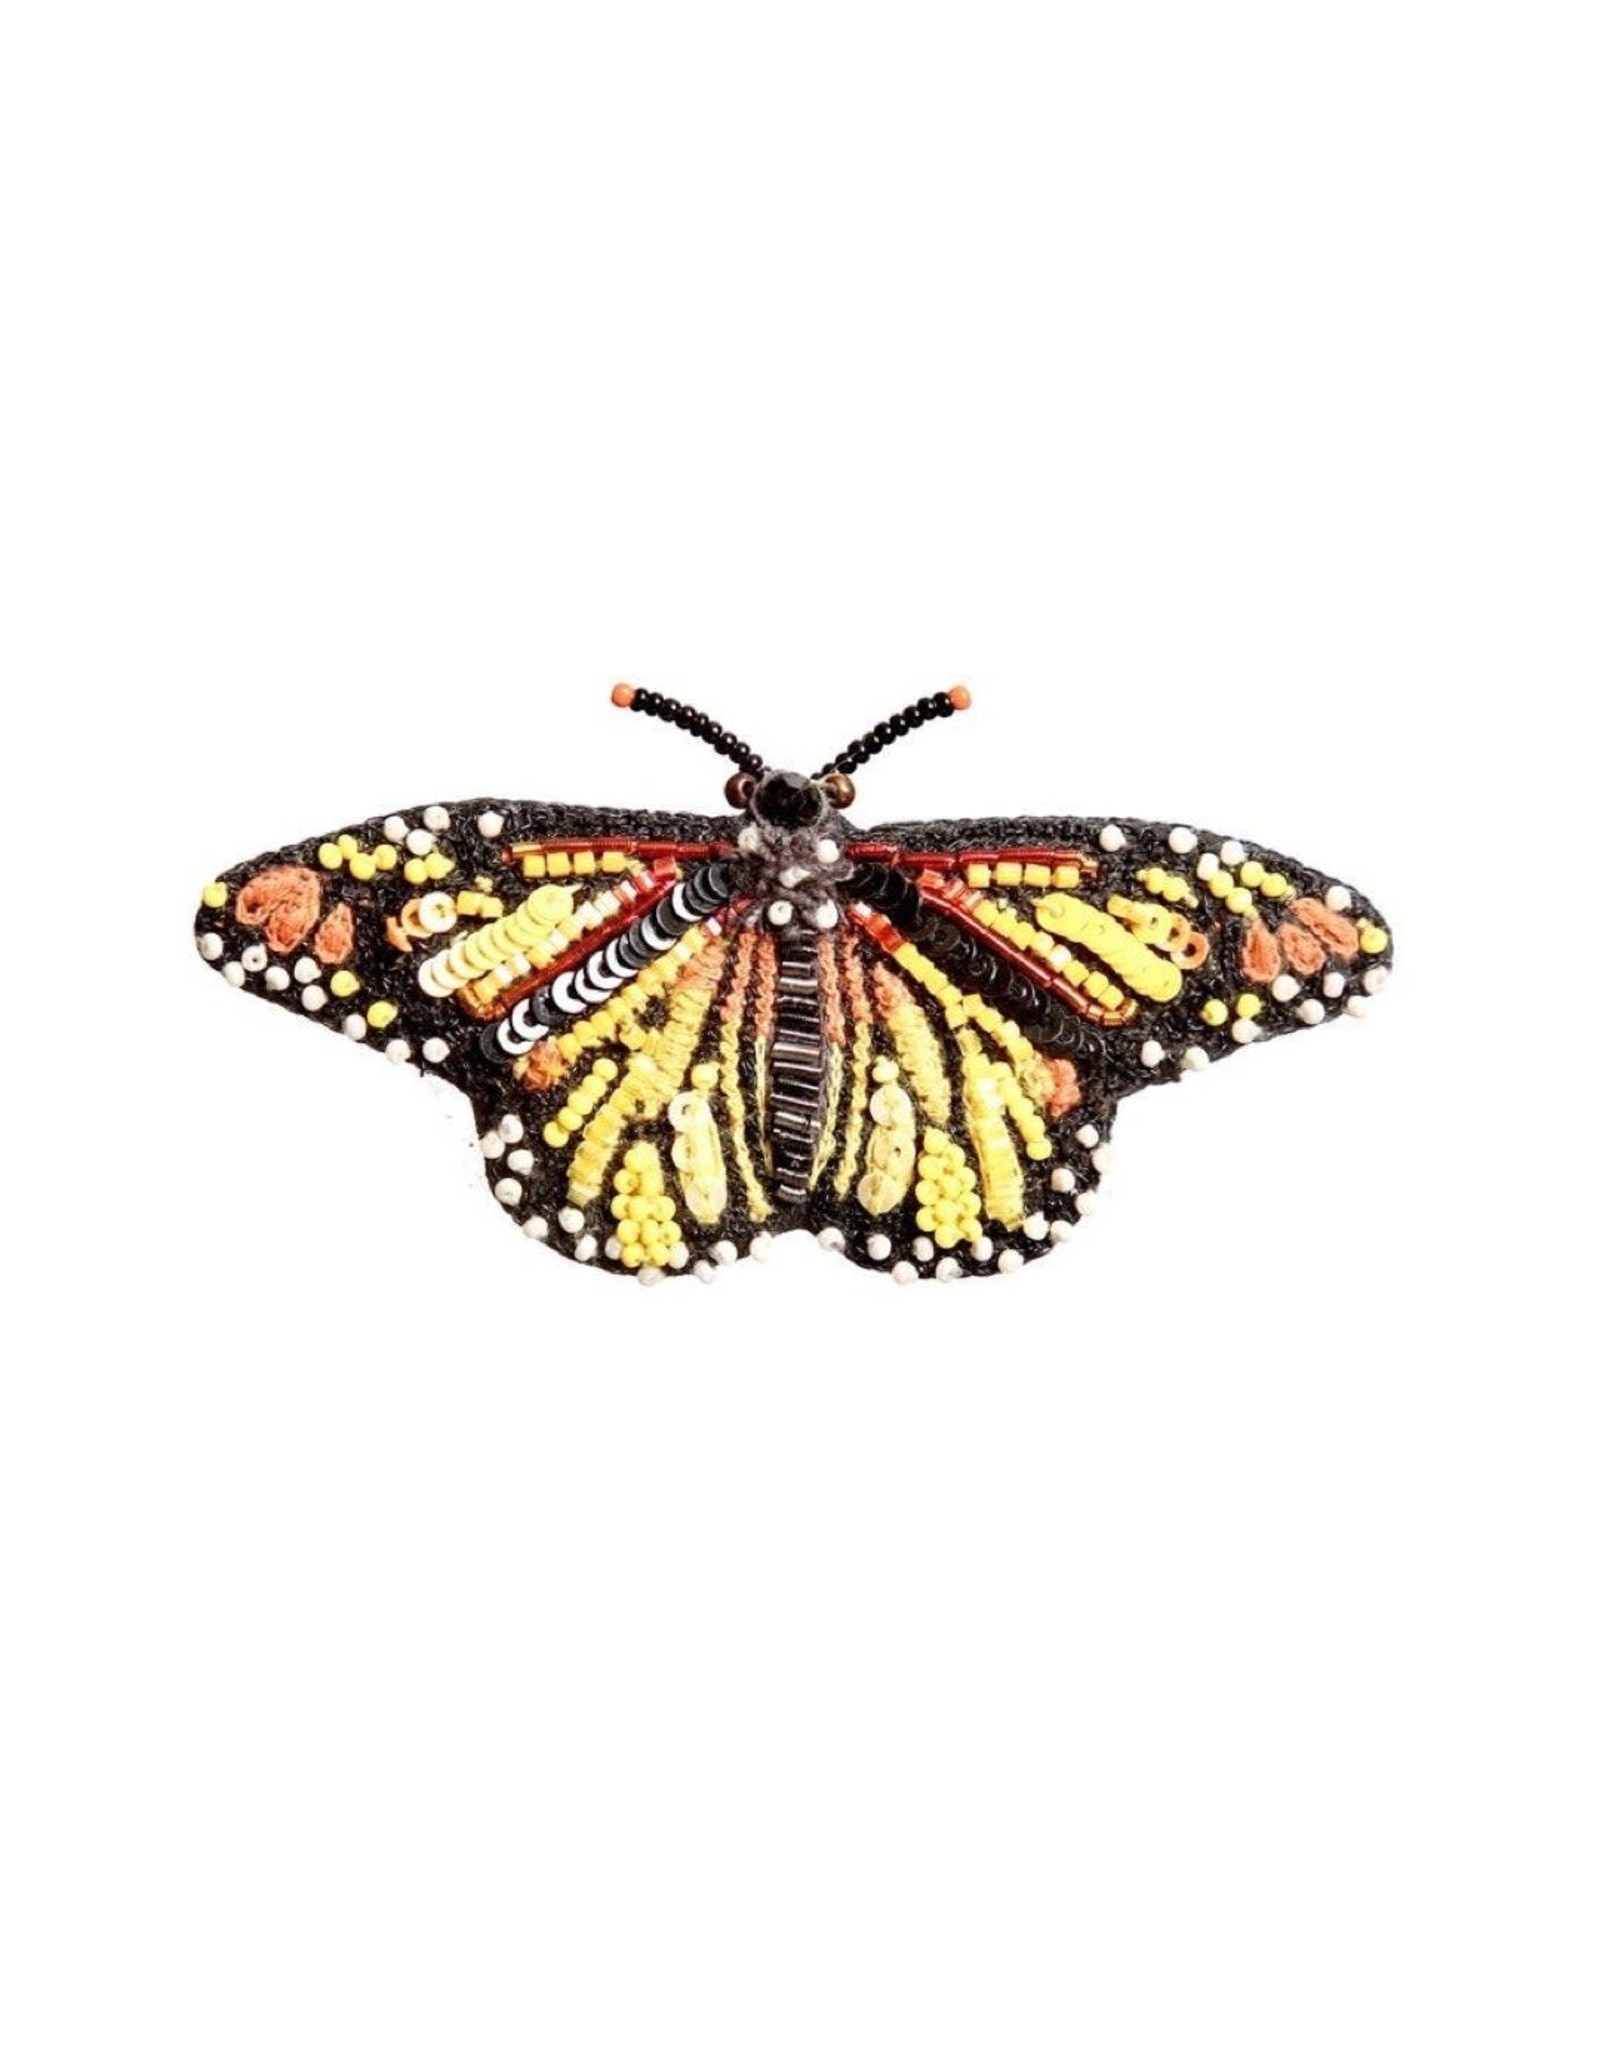 Trovelore Broche - Meandering Monarch Butterfly